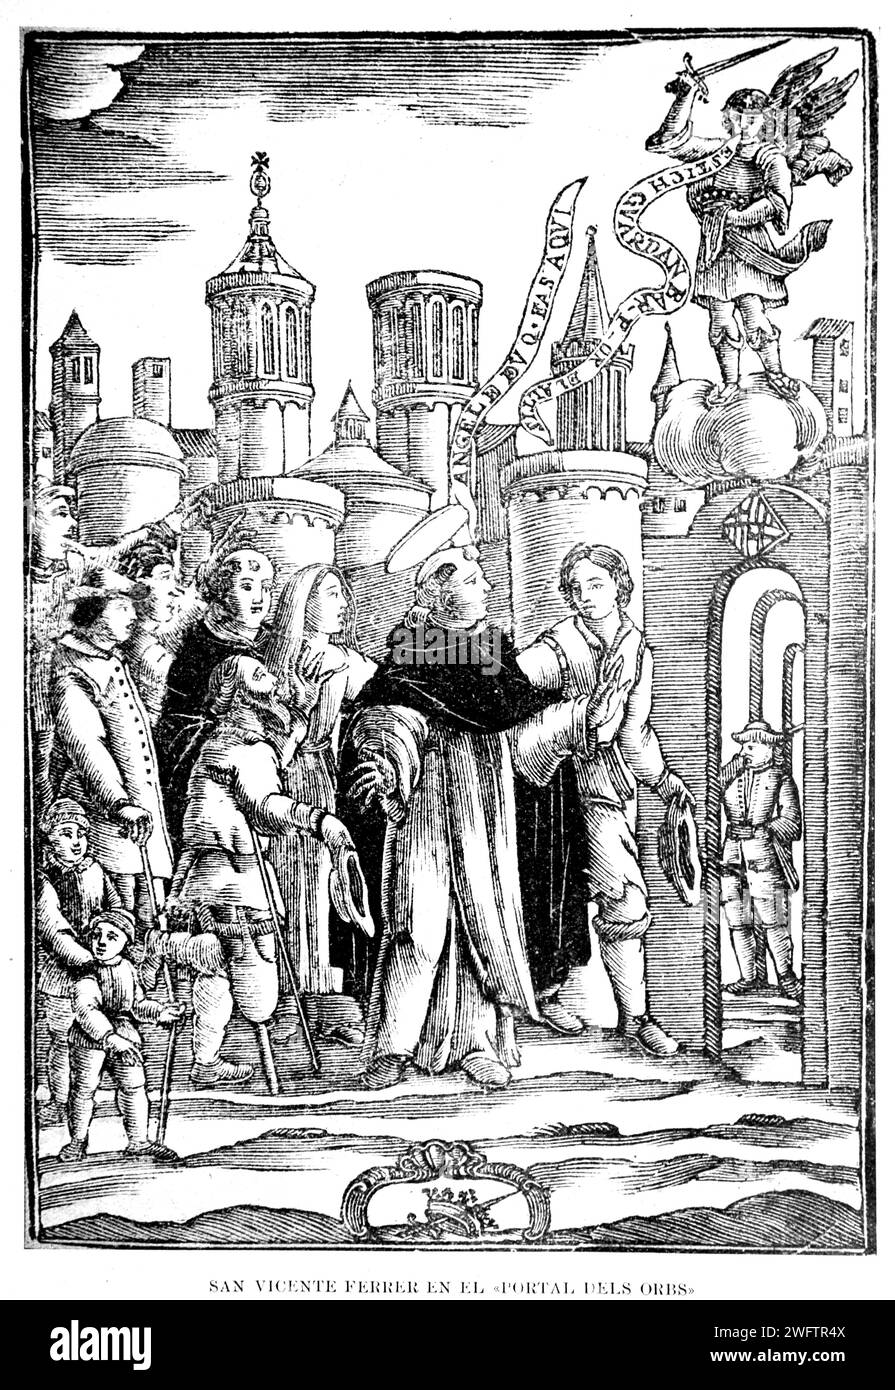 Spagna. Barcellona. Sain Vicente Ferrer in "Portal dels Obrs", 1398. Miracolo con l'apparenza di un angelo. Incisione. Foto Stock